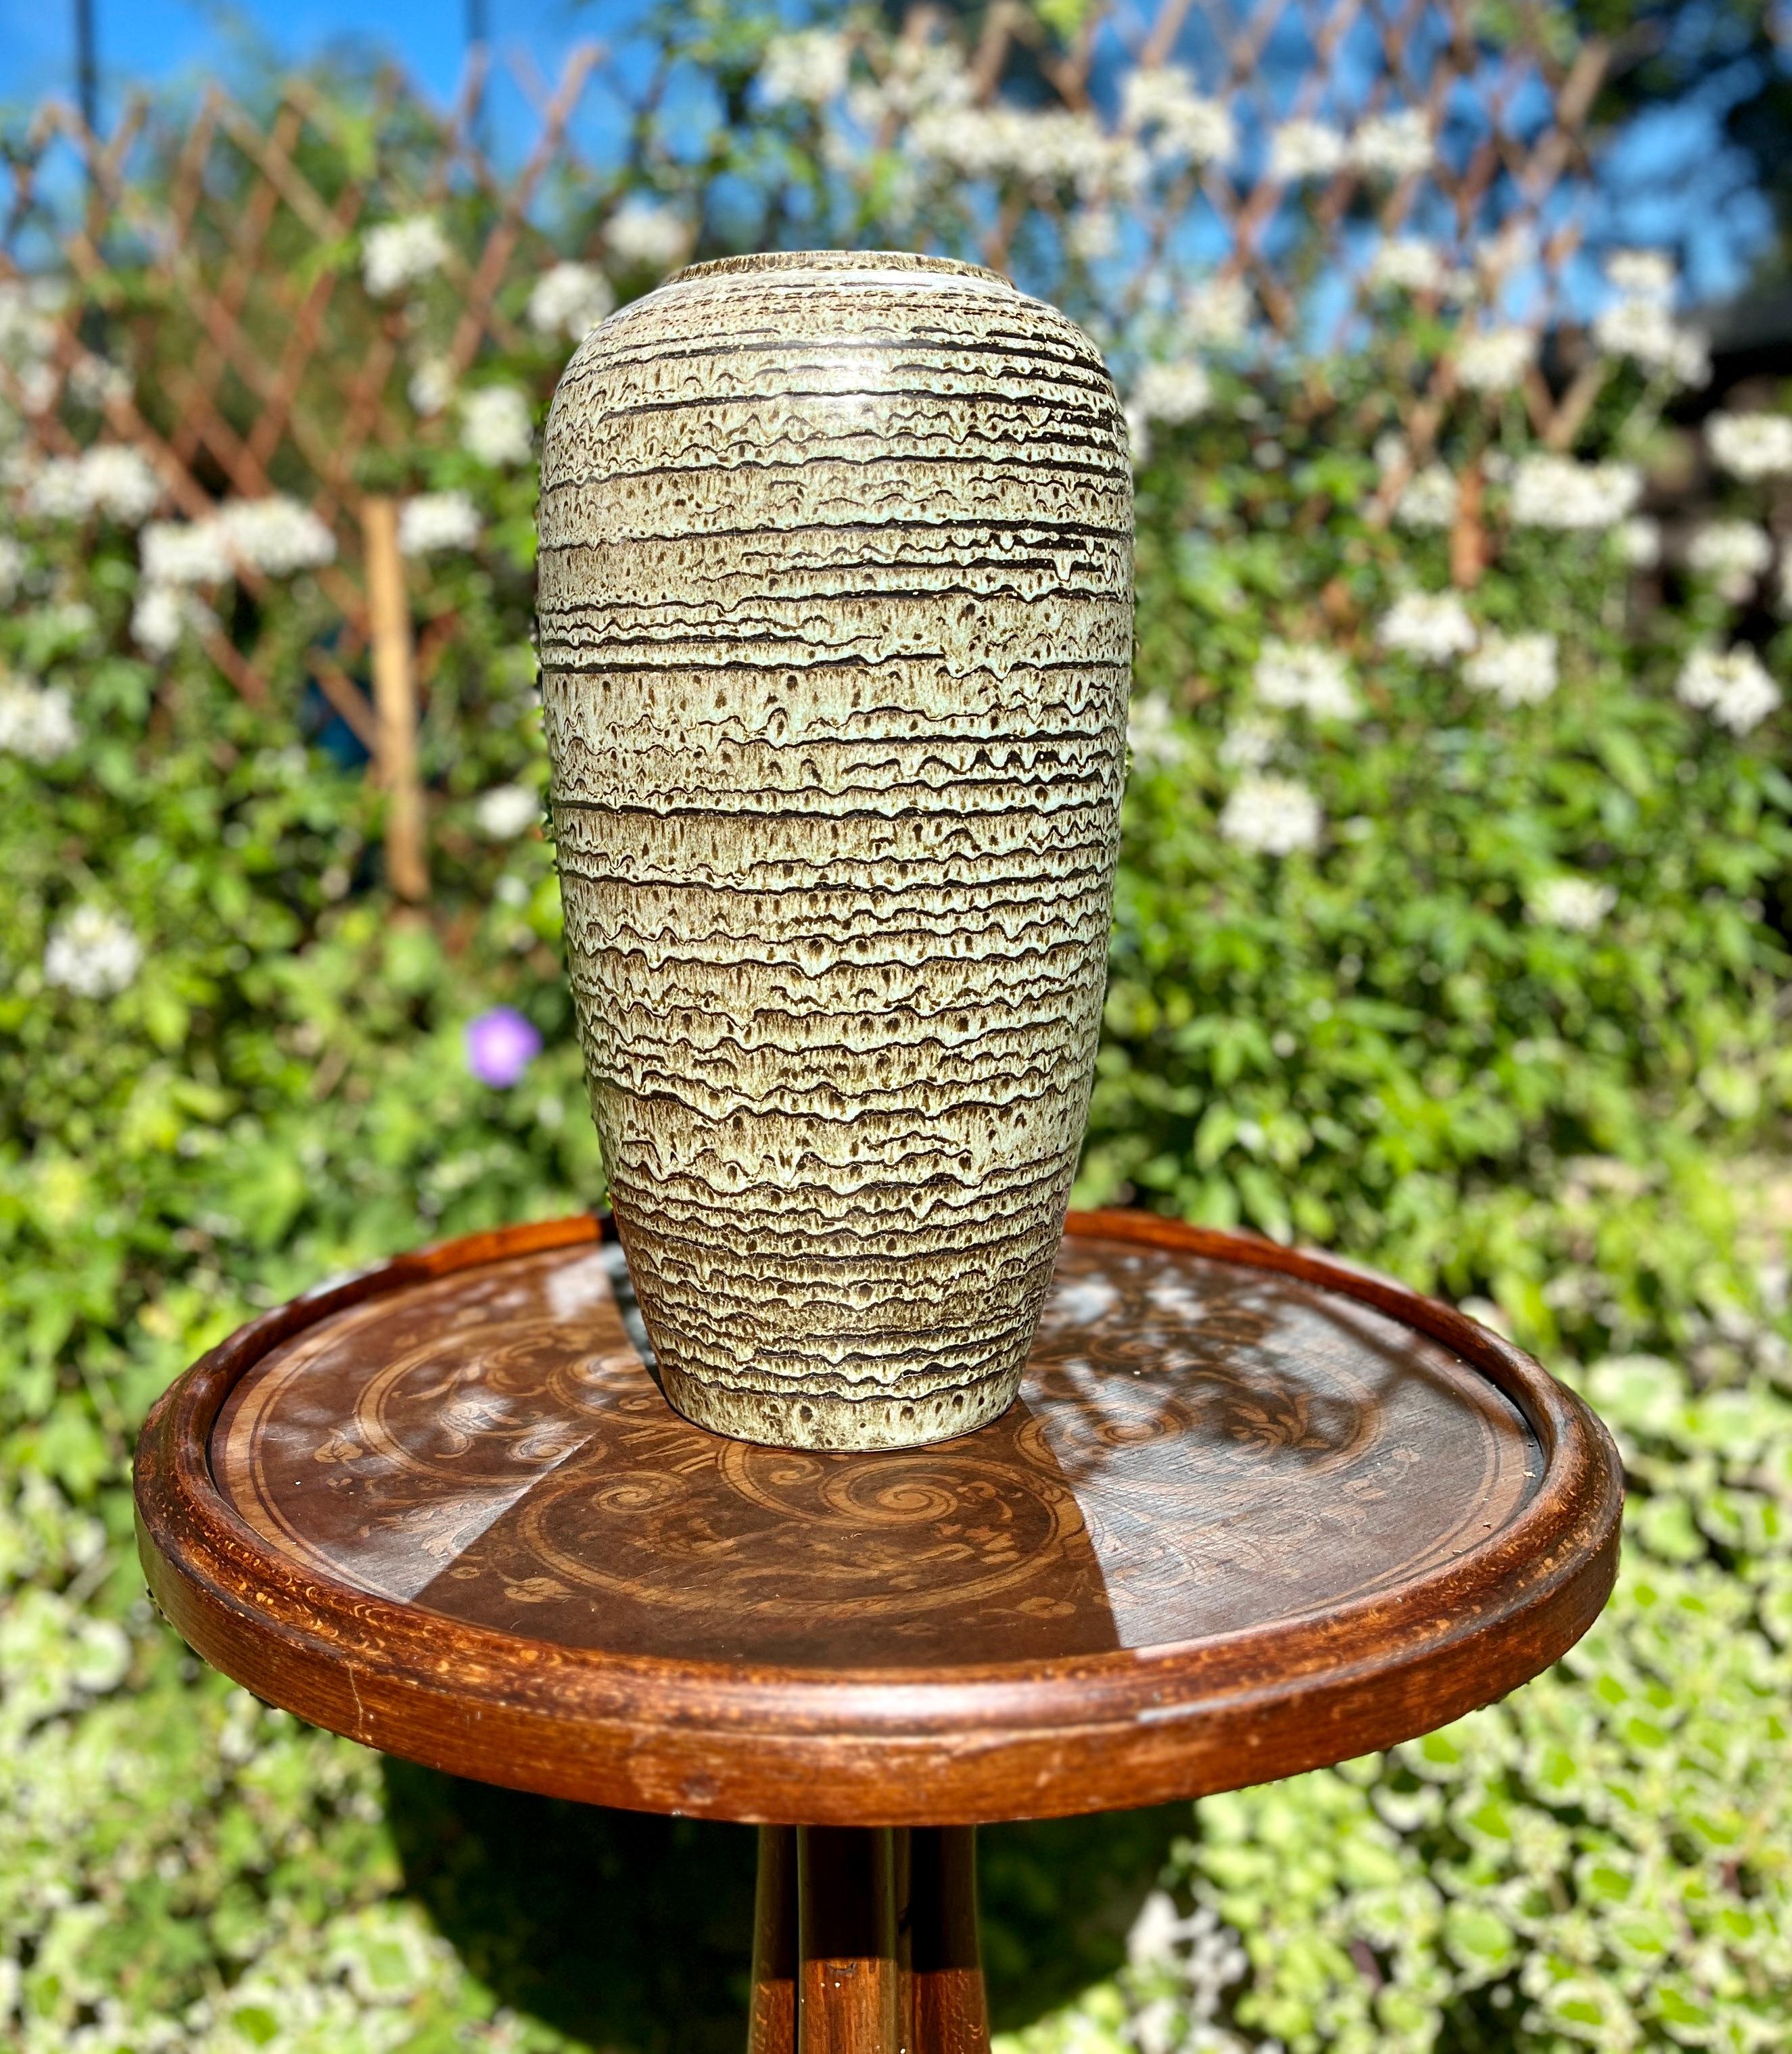 Ce vase vintage original de Jasba a été produit dans les années 1970 en Allemagne. Il est fabriqué en céramique.
Le fond est marqué du numéro de série du vase 585-40 Handarbeit.
Un design direct et minimaliste de l'ère du design des années 1960.